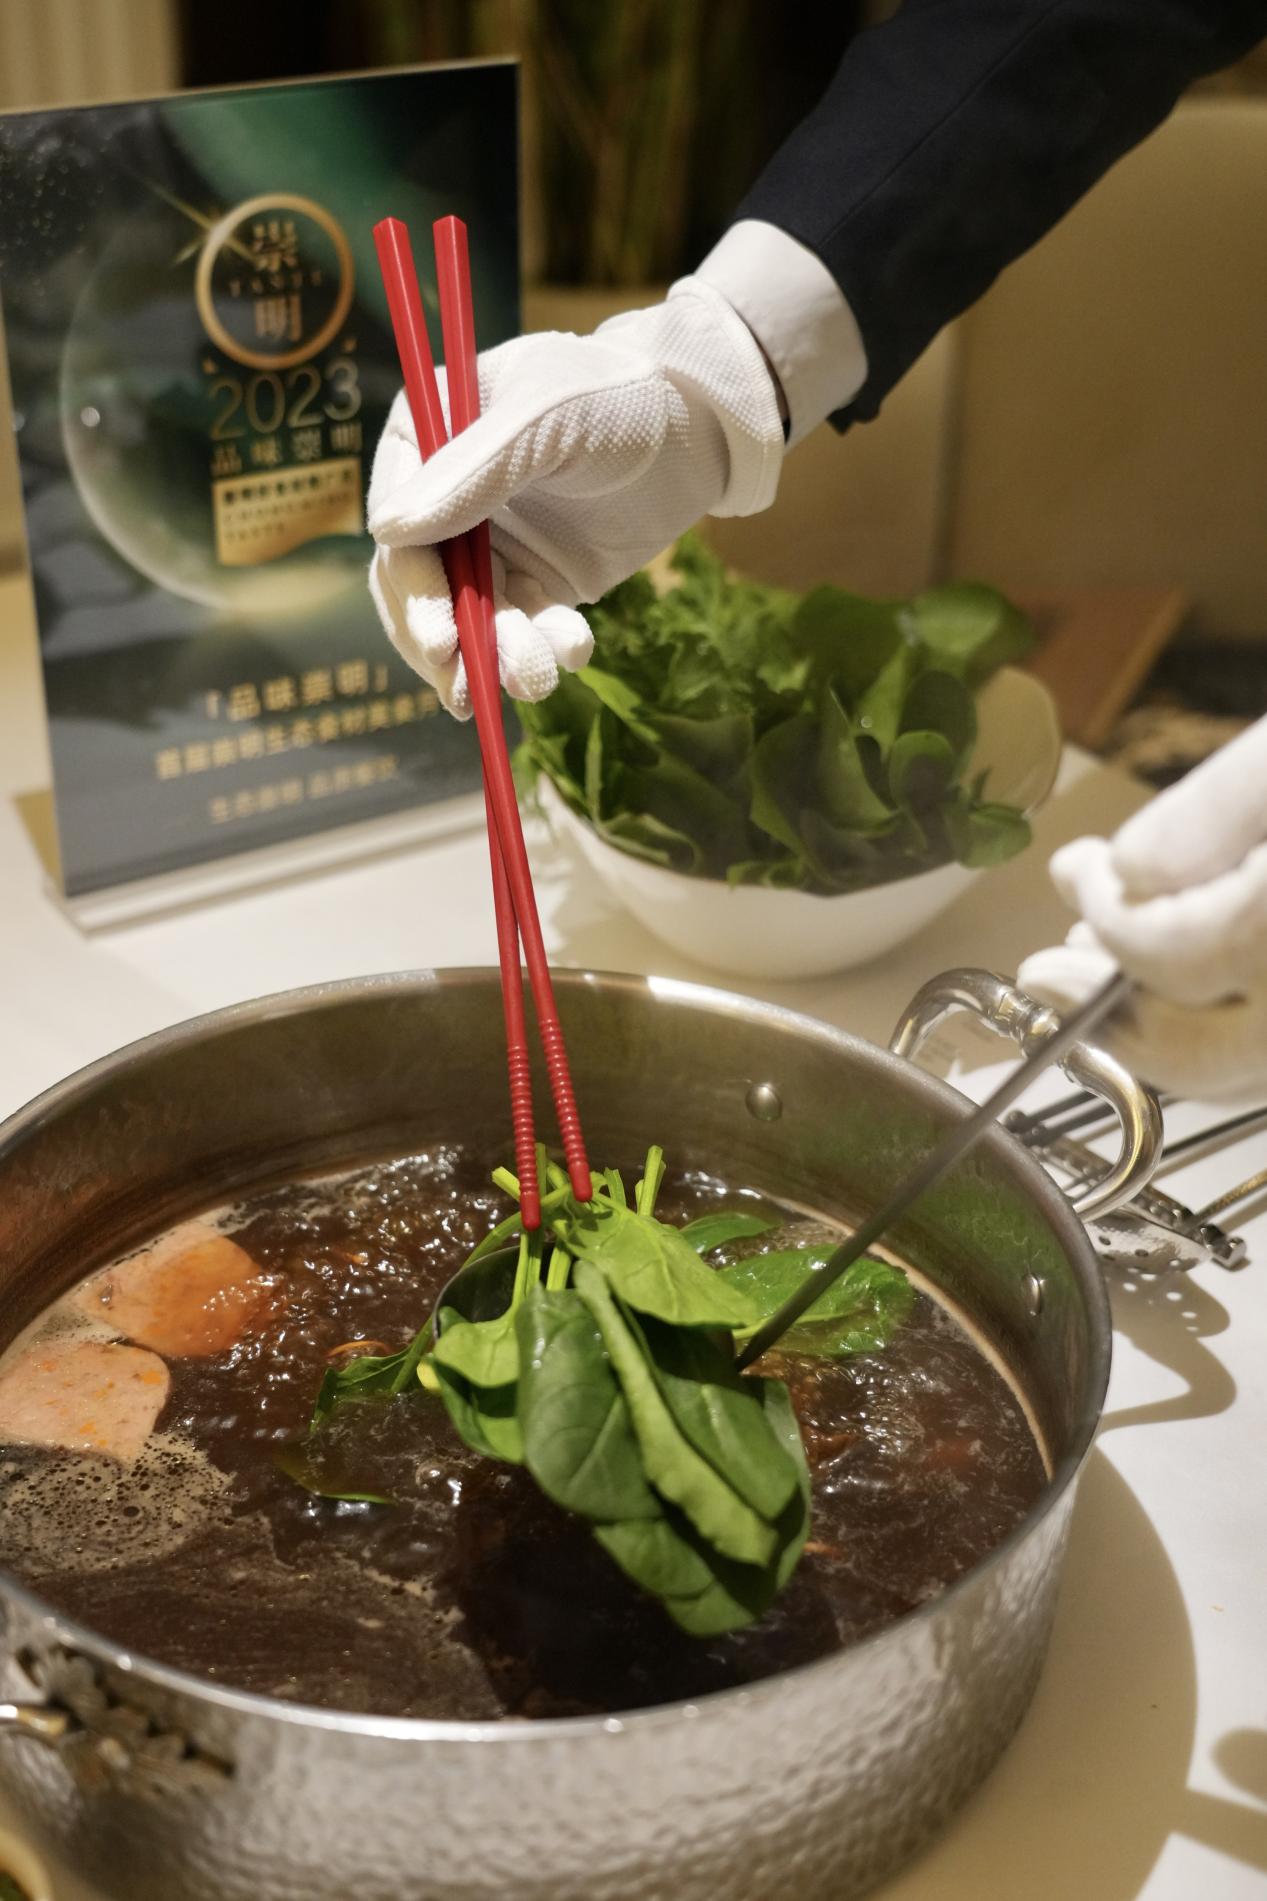 当崇明食材成为精致菜品的主角 这个初冬，在米其林餐厅“品味崇明”